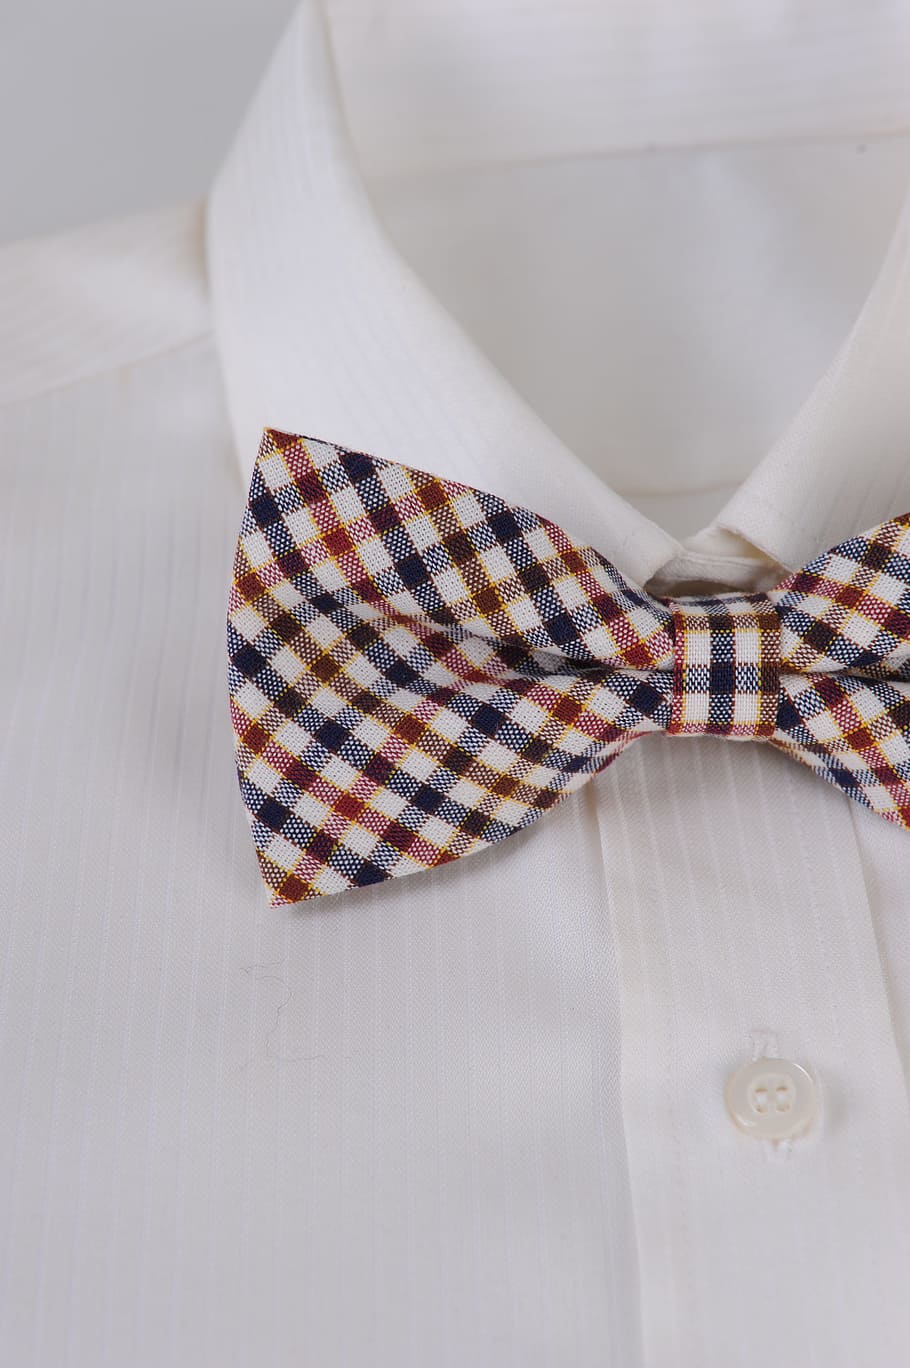 Gravata, Botha, Camisa, camisa de botão, bem vestida, padrão verificado, cor branca, roupa formal, dentro de casa, têxtil